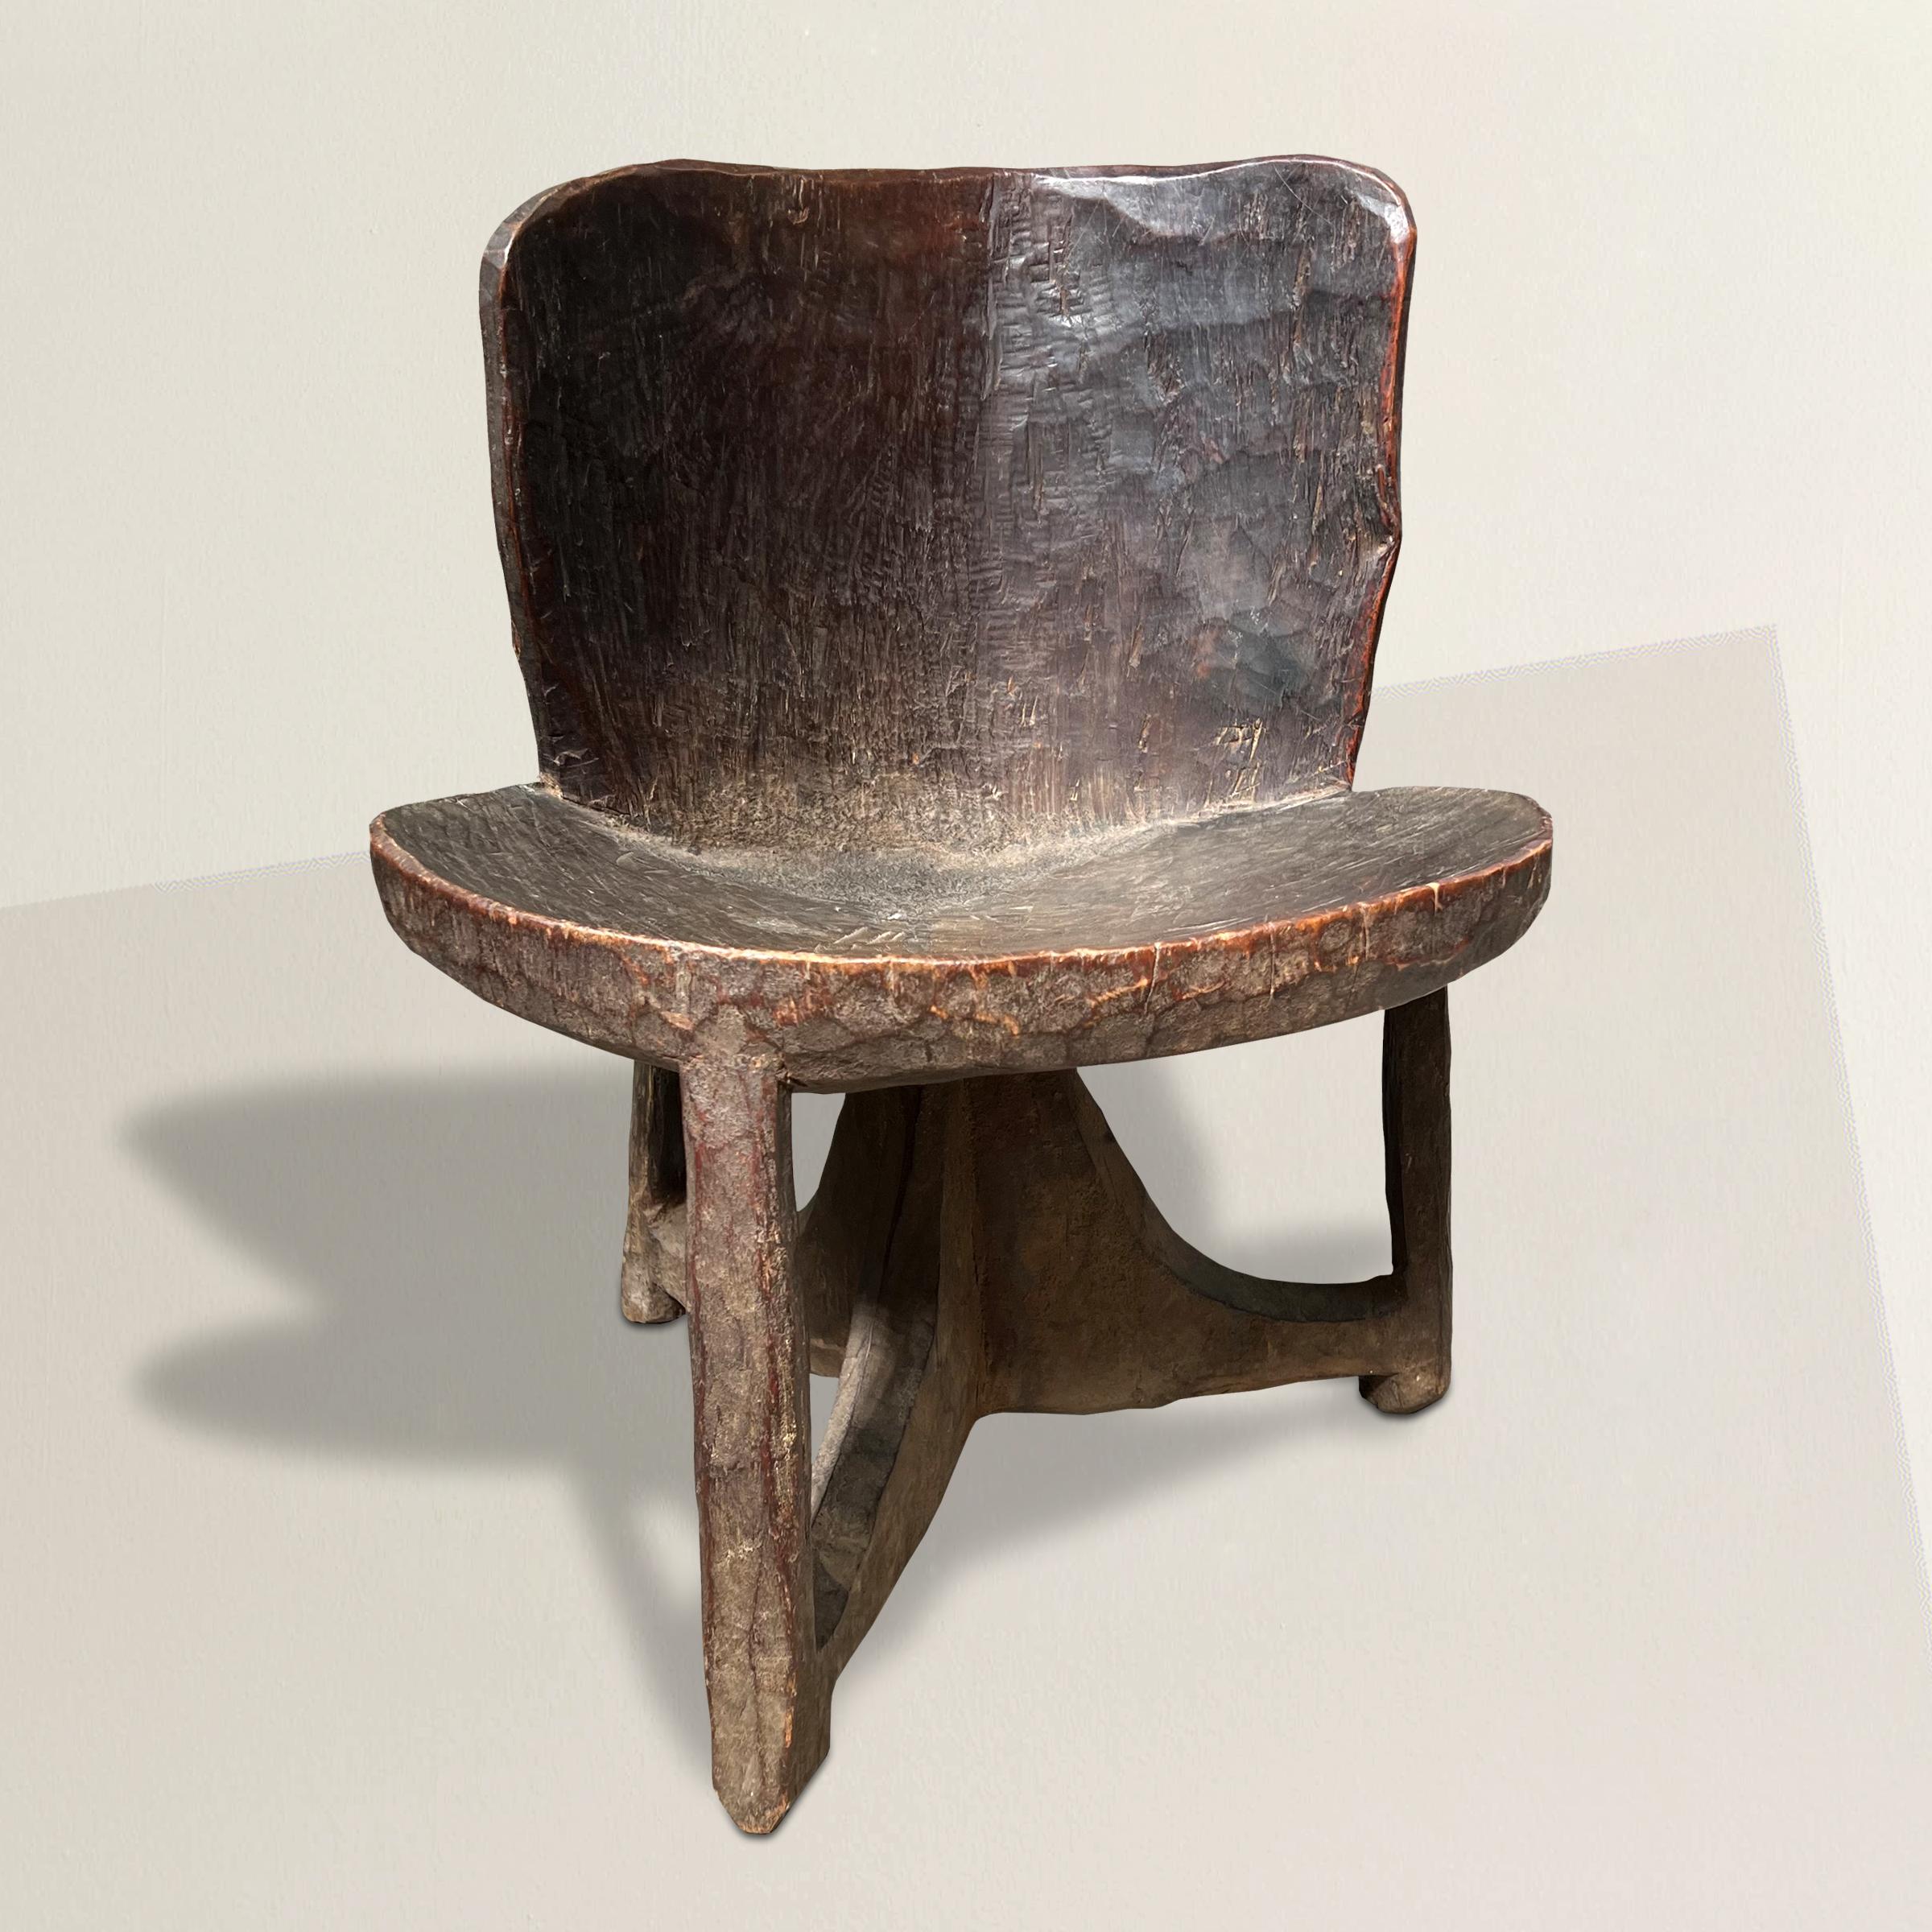 Une étonnante et rare chaise Gurage Peoples éthiopienne du début du 20e siècle à l'esprit moderniste, sculptée d'une seule pièce de bois avec un dossier incurvé et une assise ronde et convexe soutenue par trois pieds, et avec une incroyable patine